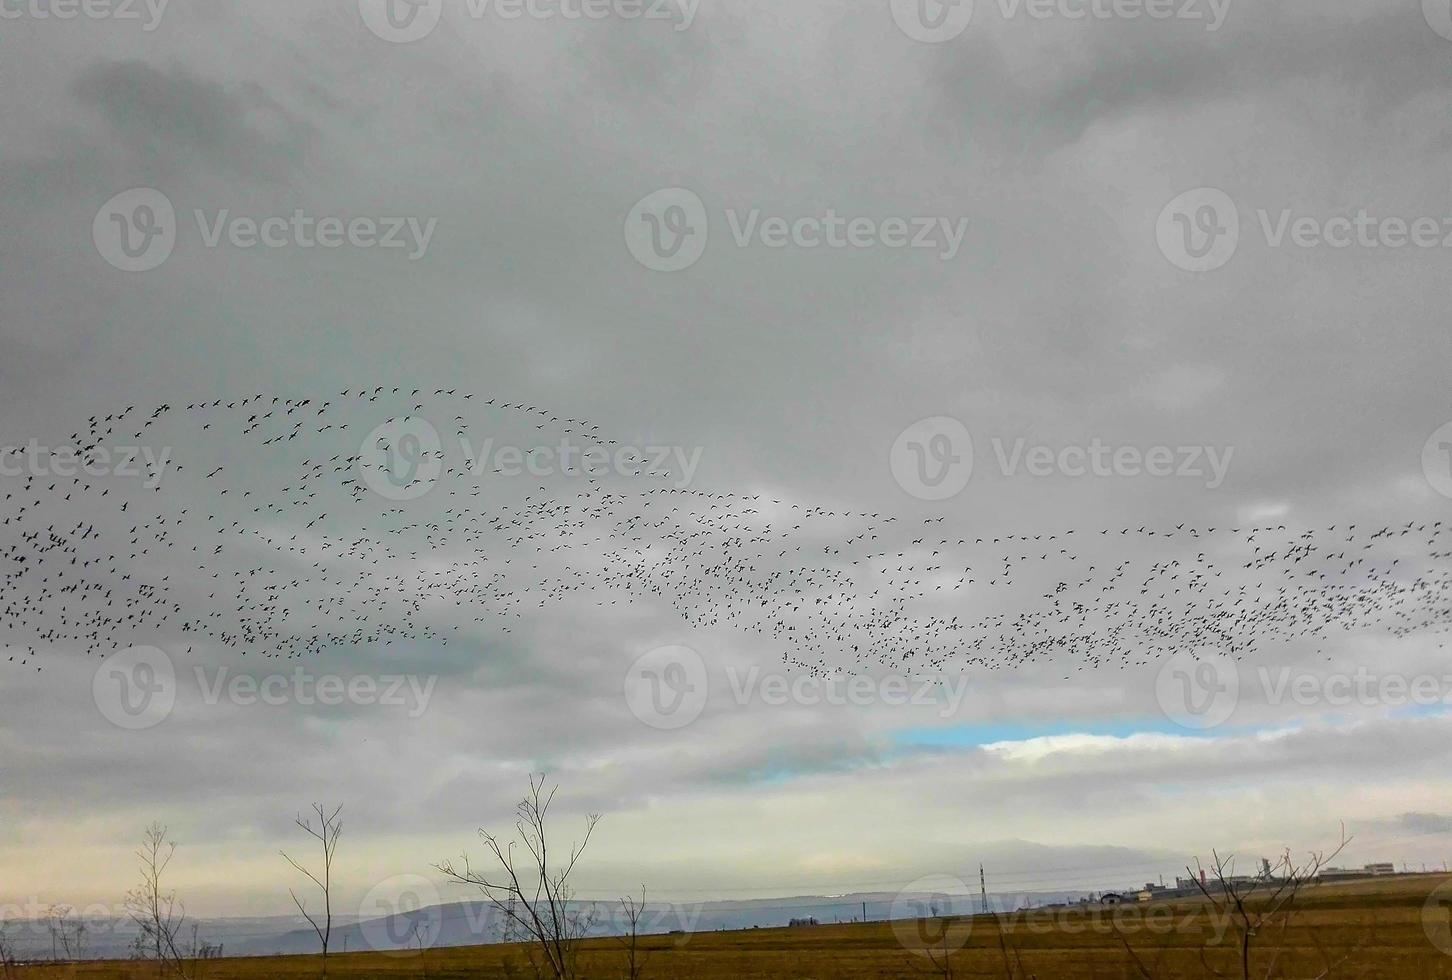 grande bando de pássaros voando. foto